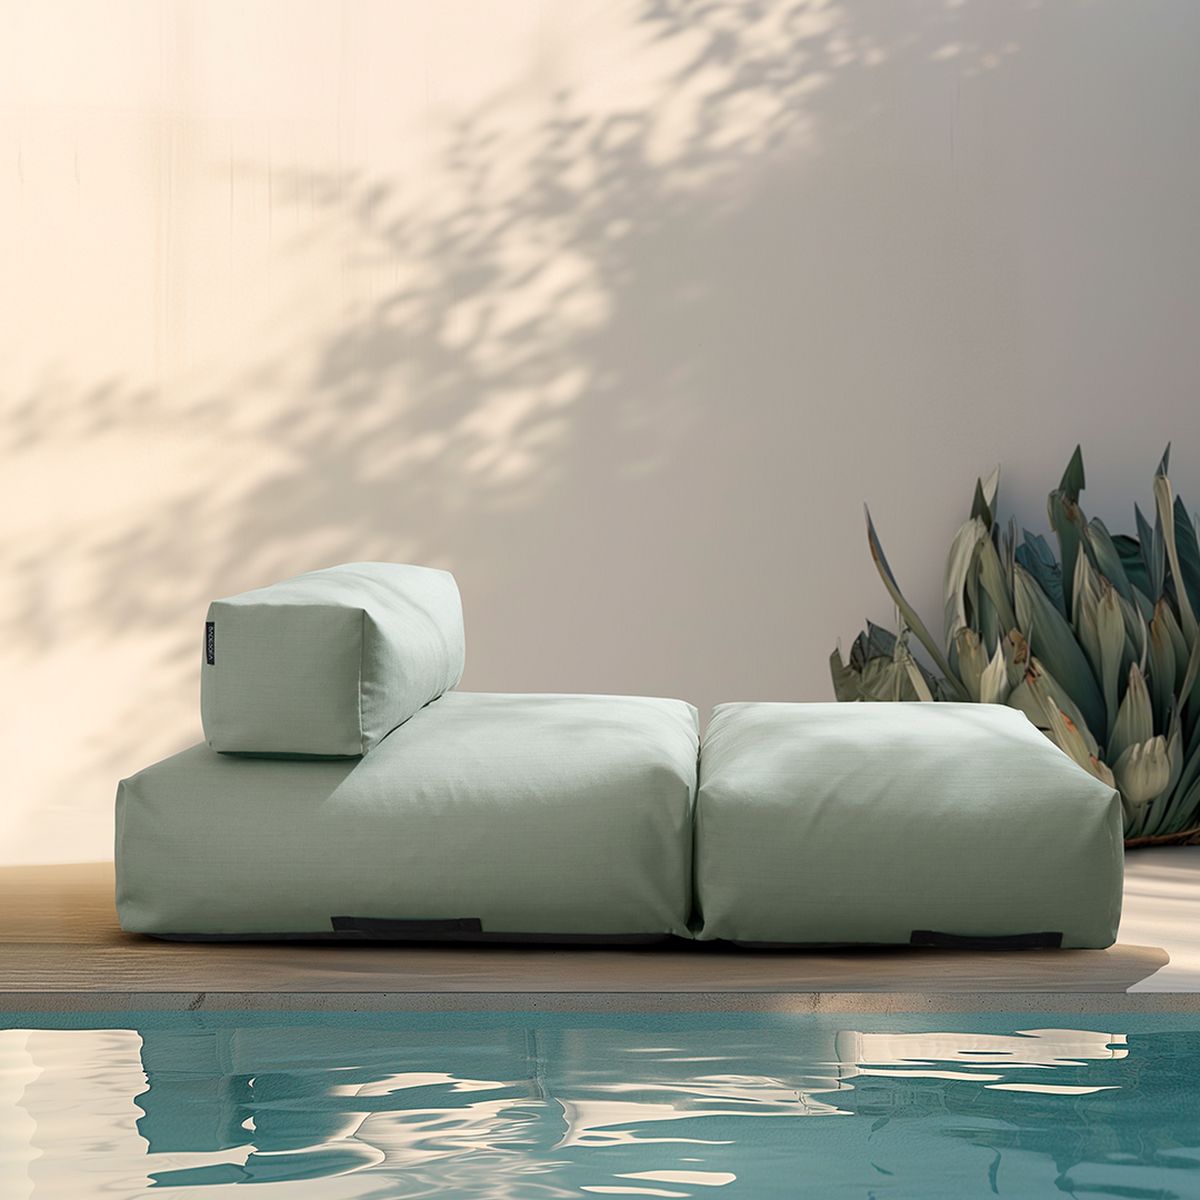 Foto: Das Poolsofa bringt Entspannung und Komfort.